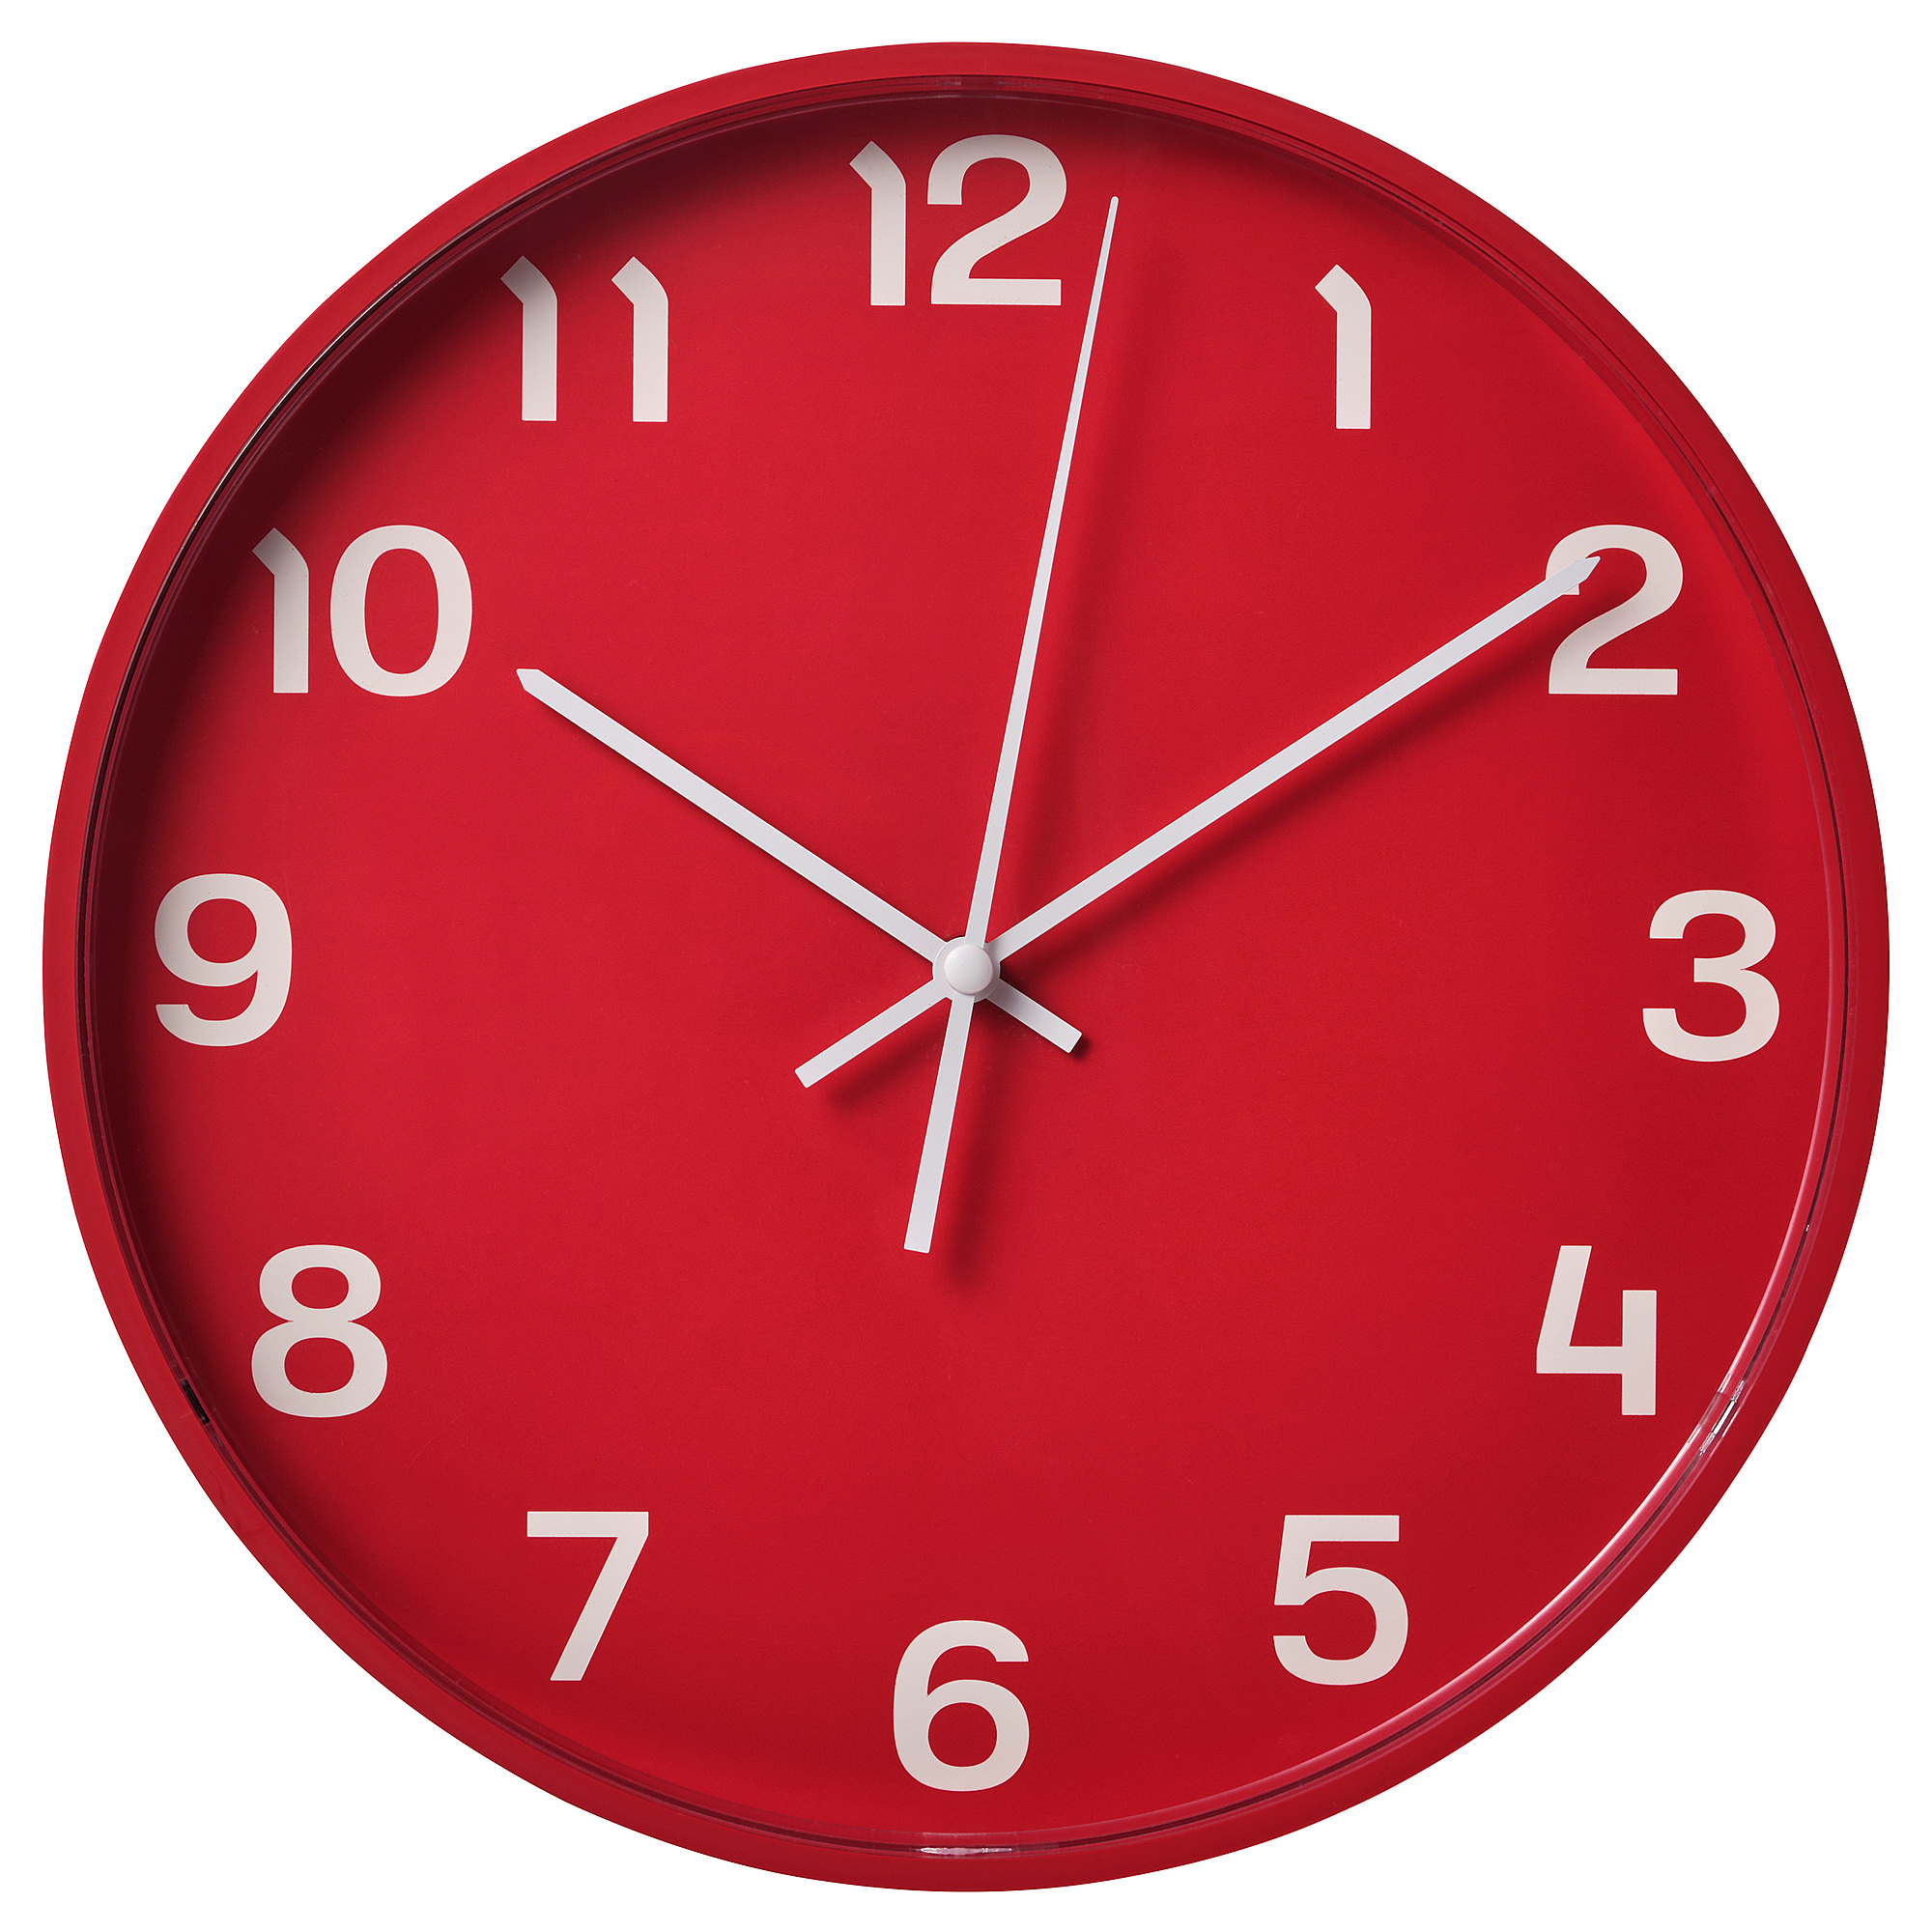 14 28 на часах. Pluttis настенные часы, низкое напряжение/красный, 28 см. Часы икеа плуттис красный. Часы настенные икеа плуттис. Часы красные ikea.